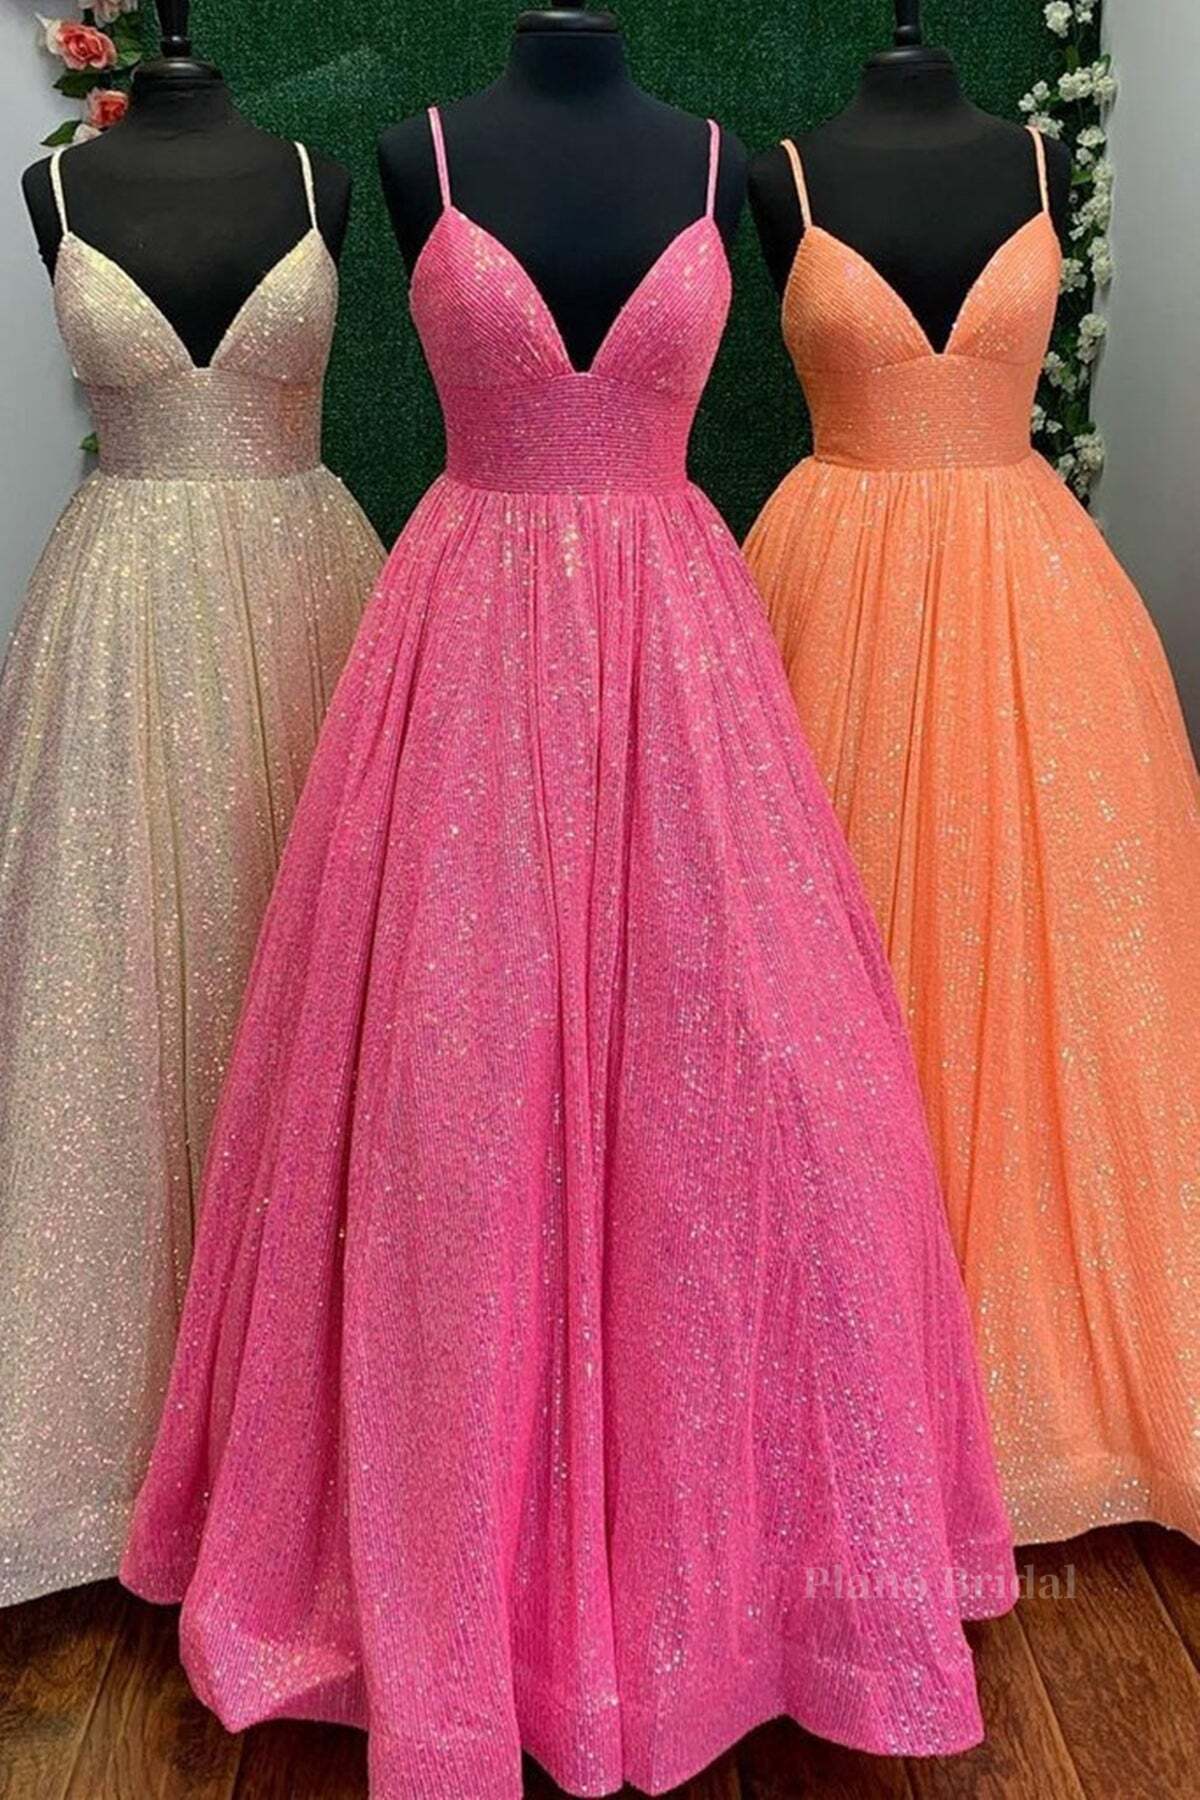 Shiny Tulle V Neck Backless Hot Pink/Orange/Champagne Long Prom Dresses, Backless Hot Pink/Orange/Champagne Formal Graduation Evening Dresses